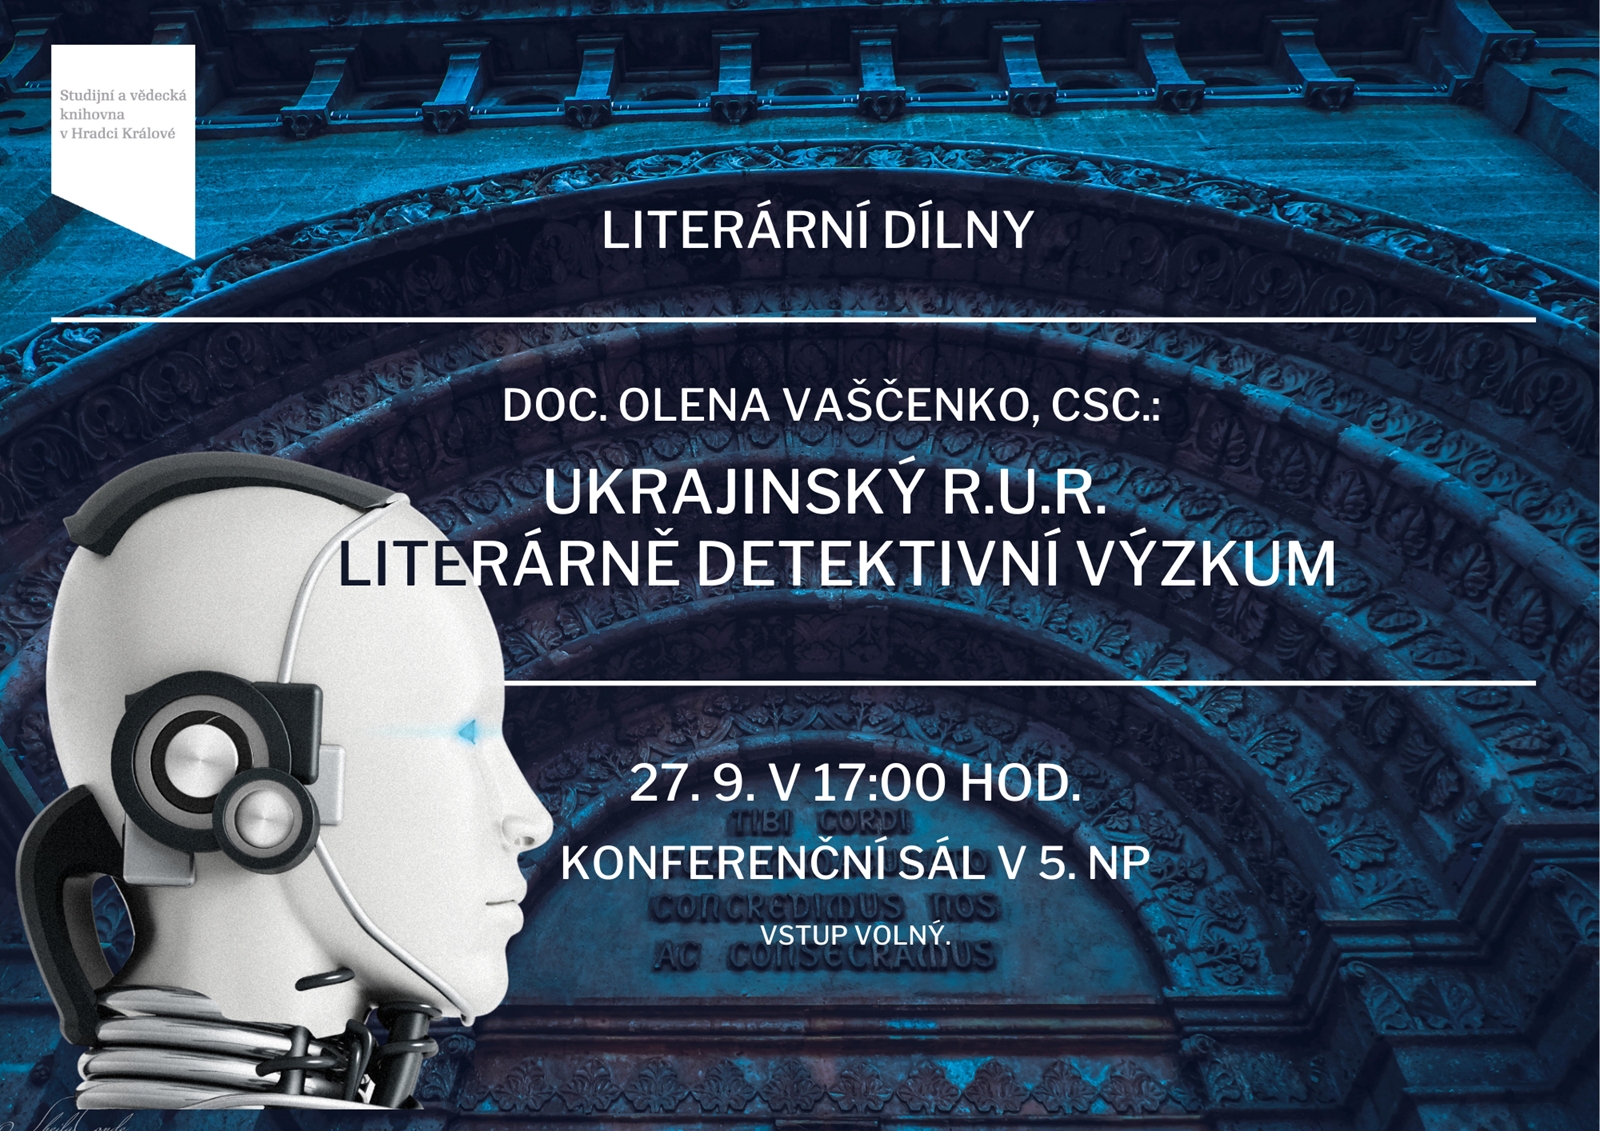 Literární dílny: Ukrajinský R.U.R. - literárně detektivní výzkum